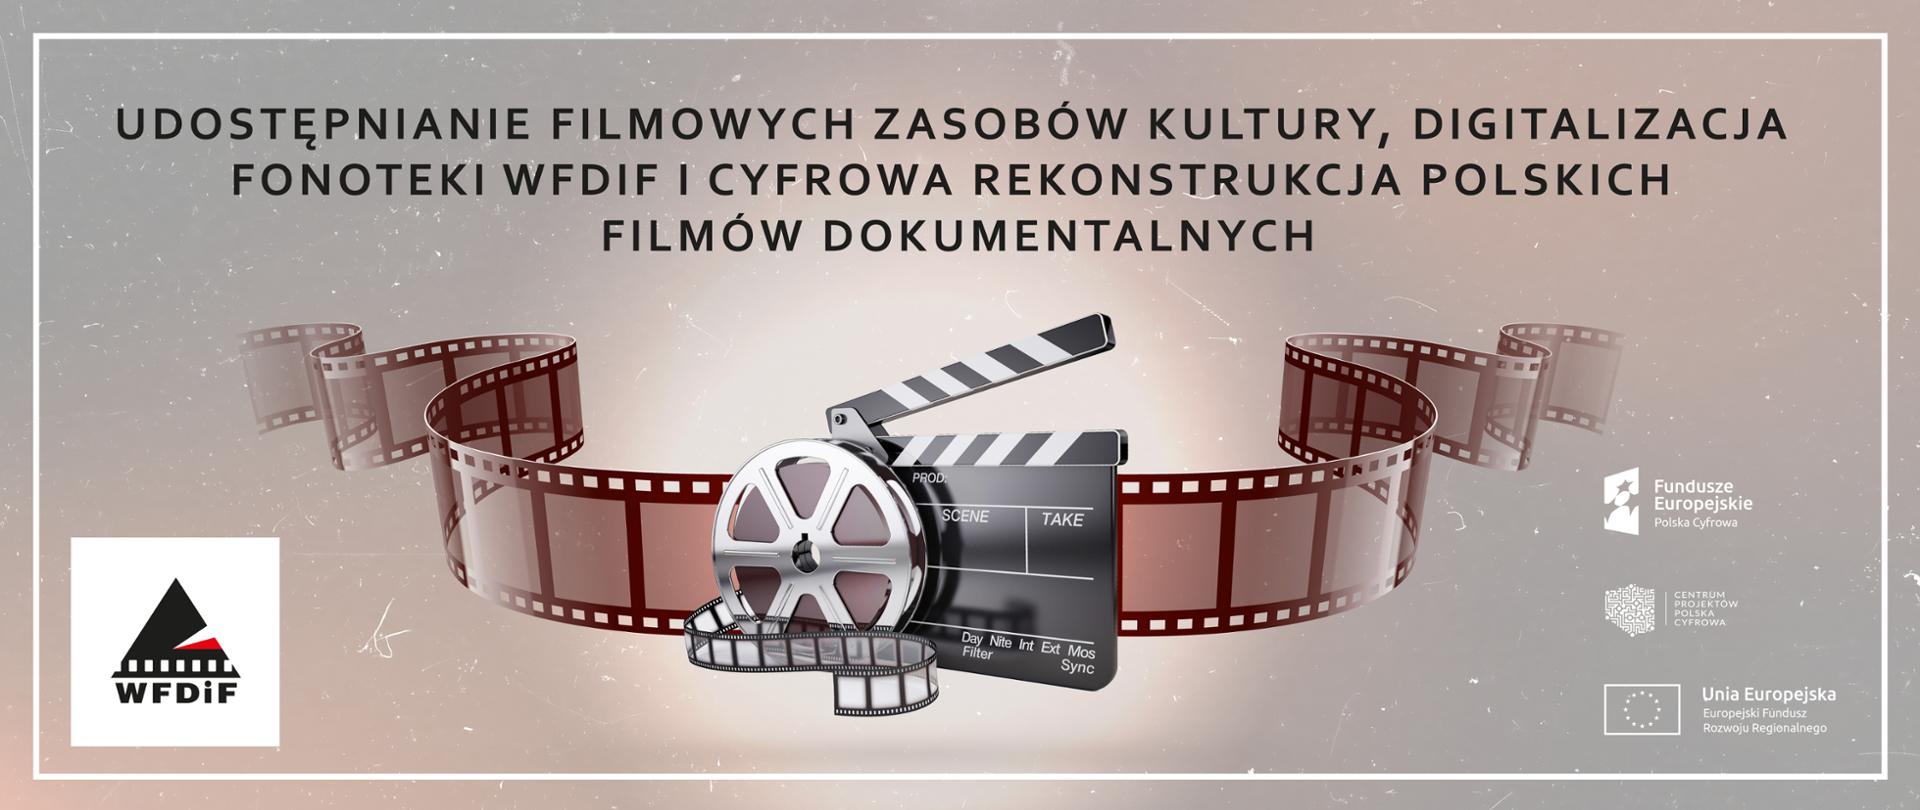 Udostępnianie Filmowych Zasobów Kultury, Digitalizacja Fonoteki WFDIF oraz Cyfrowa Rekonstrukcja Polskich Filmów Dokumentalnych